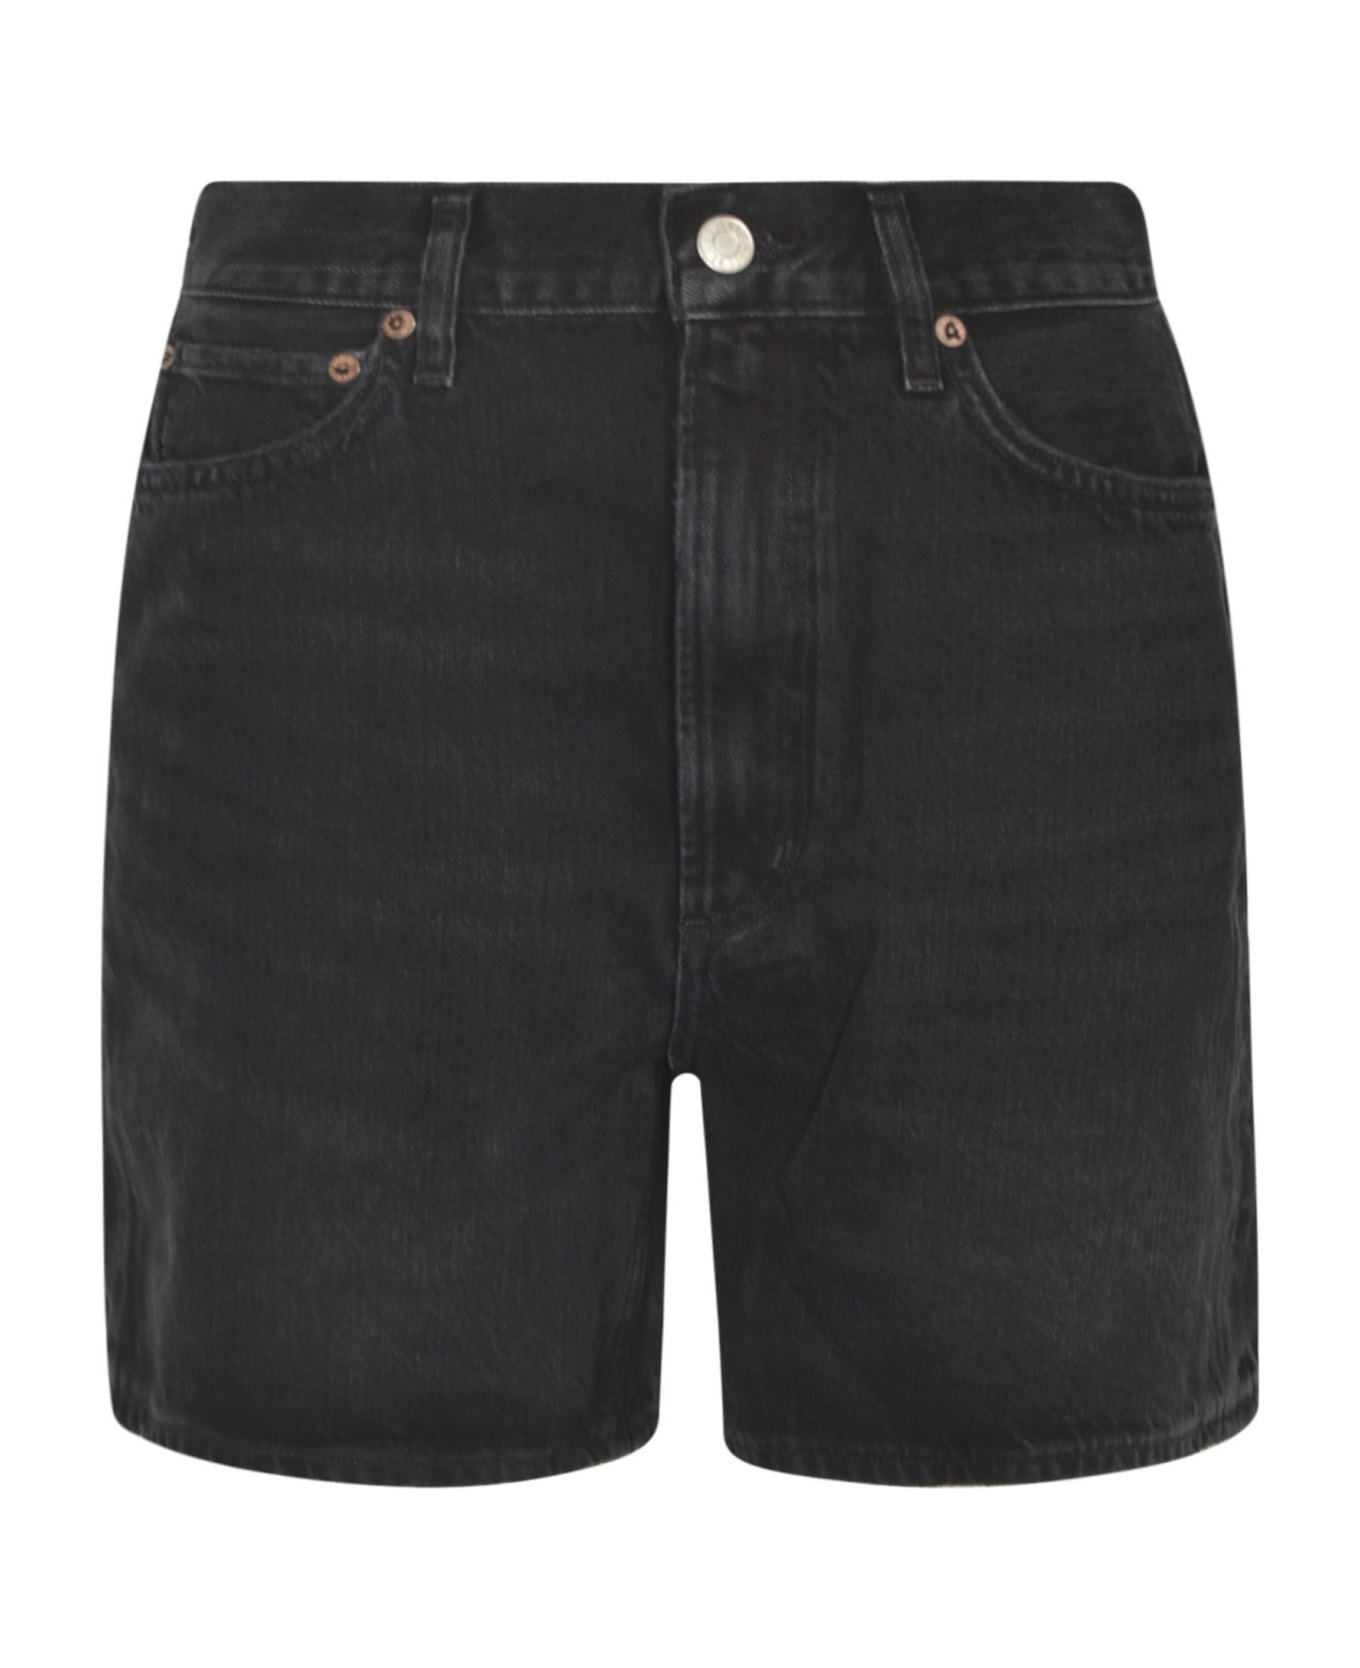 AGOLDE Buttoned Denim Shorts - WASHED BACK